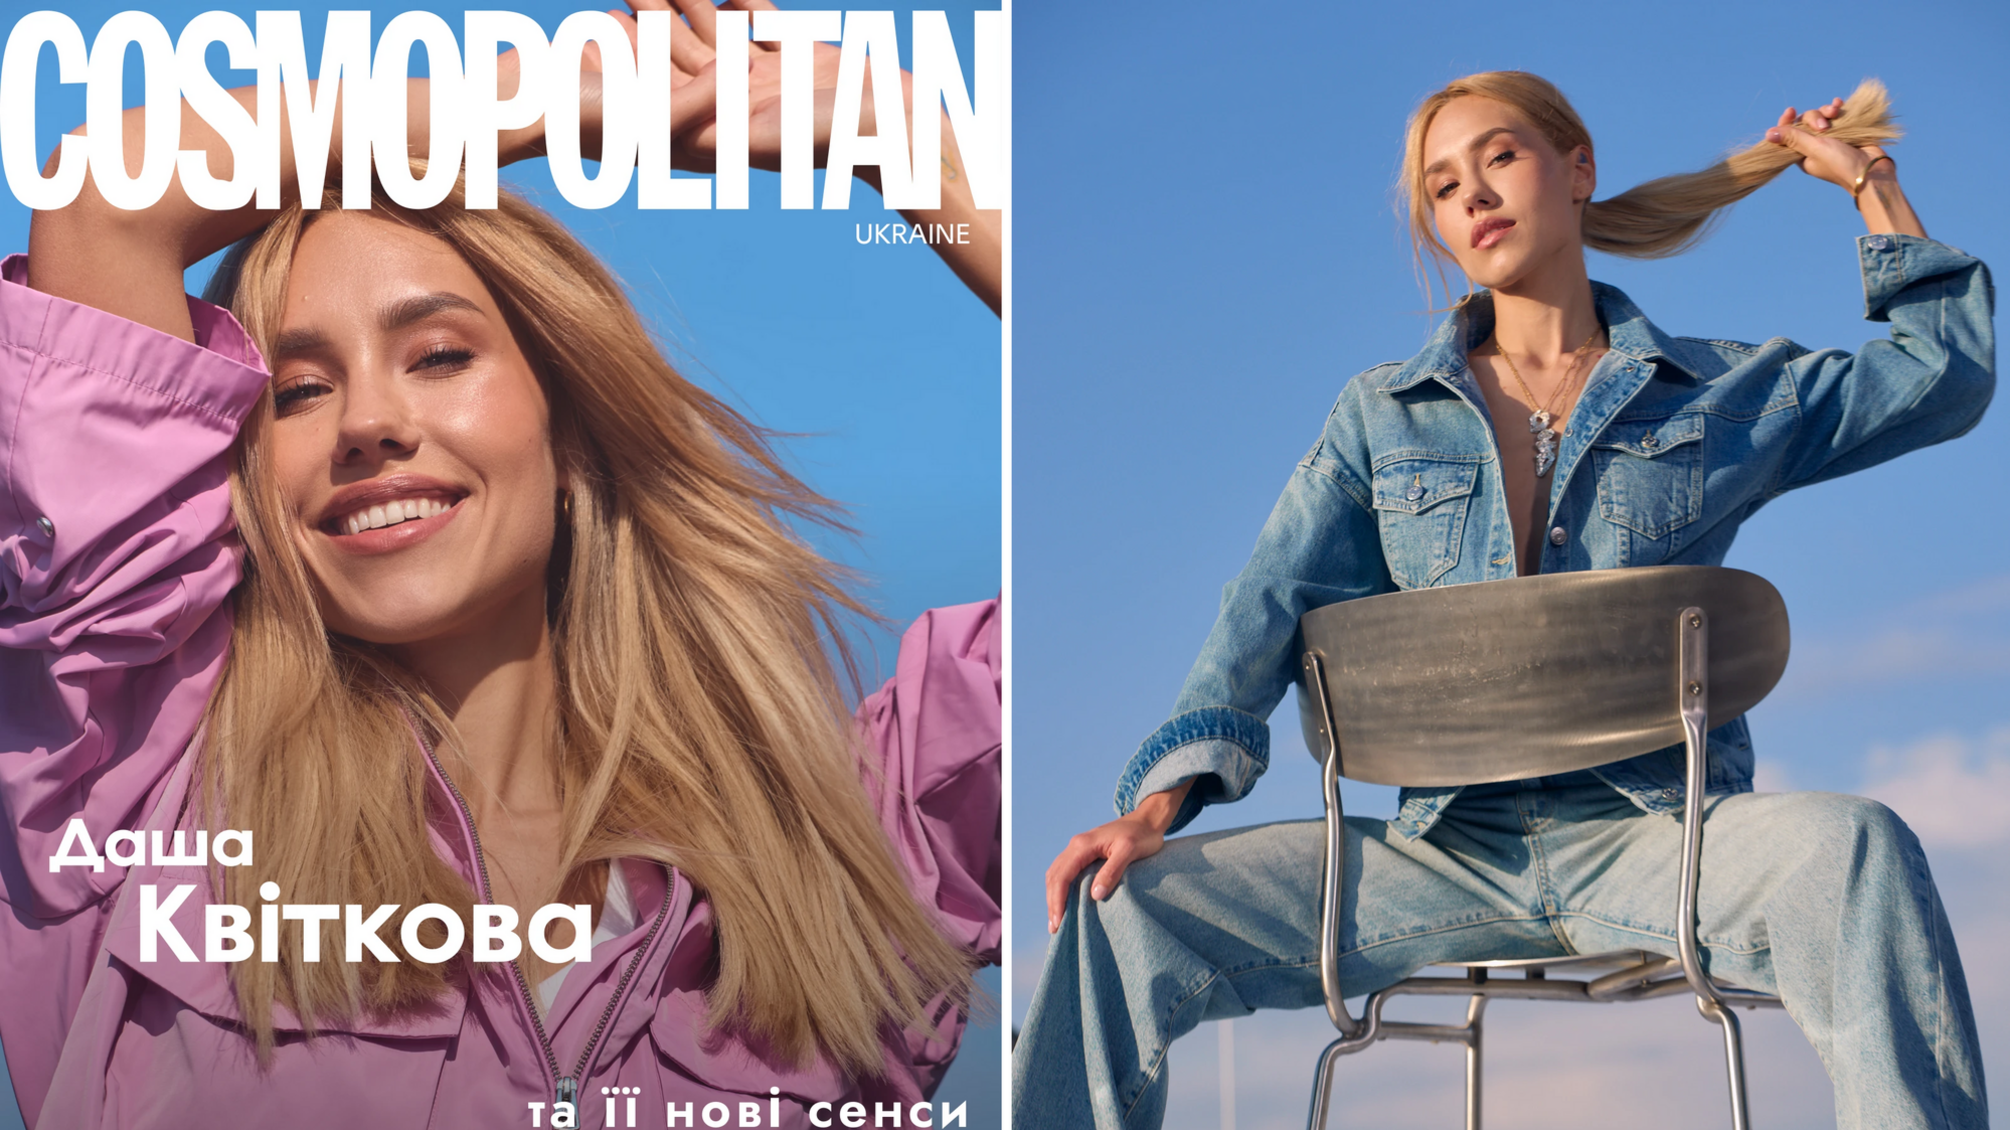 Даша Квиткова появилась на обложке нового Cosmopolitan